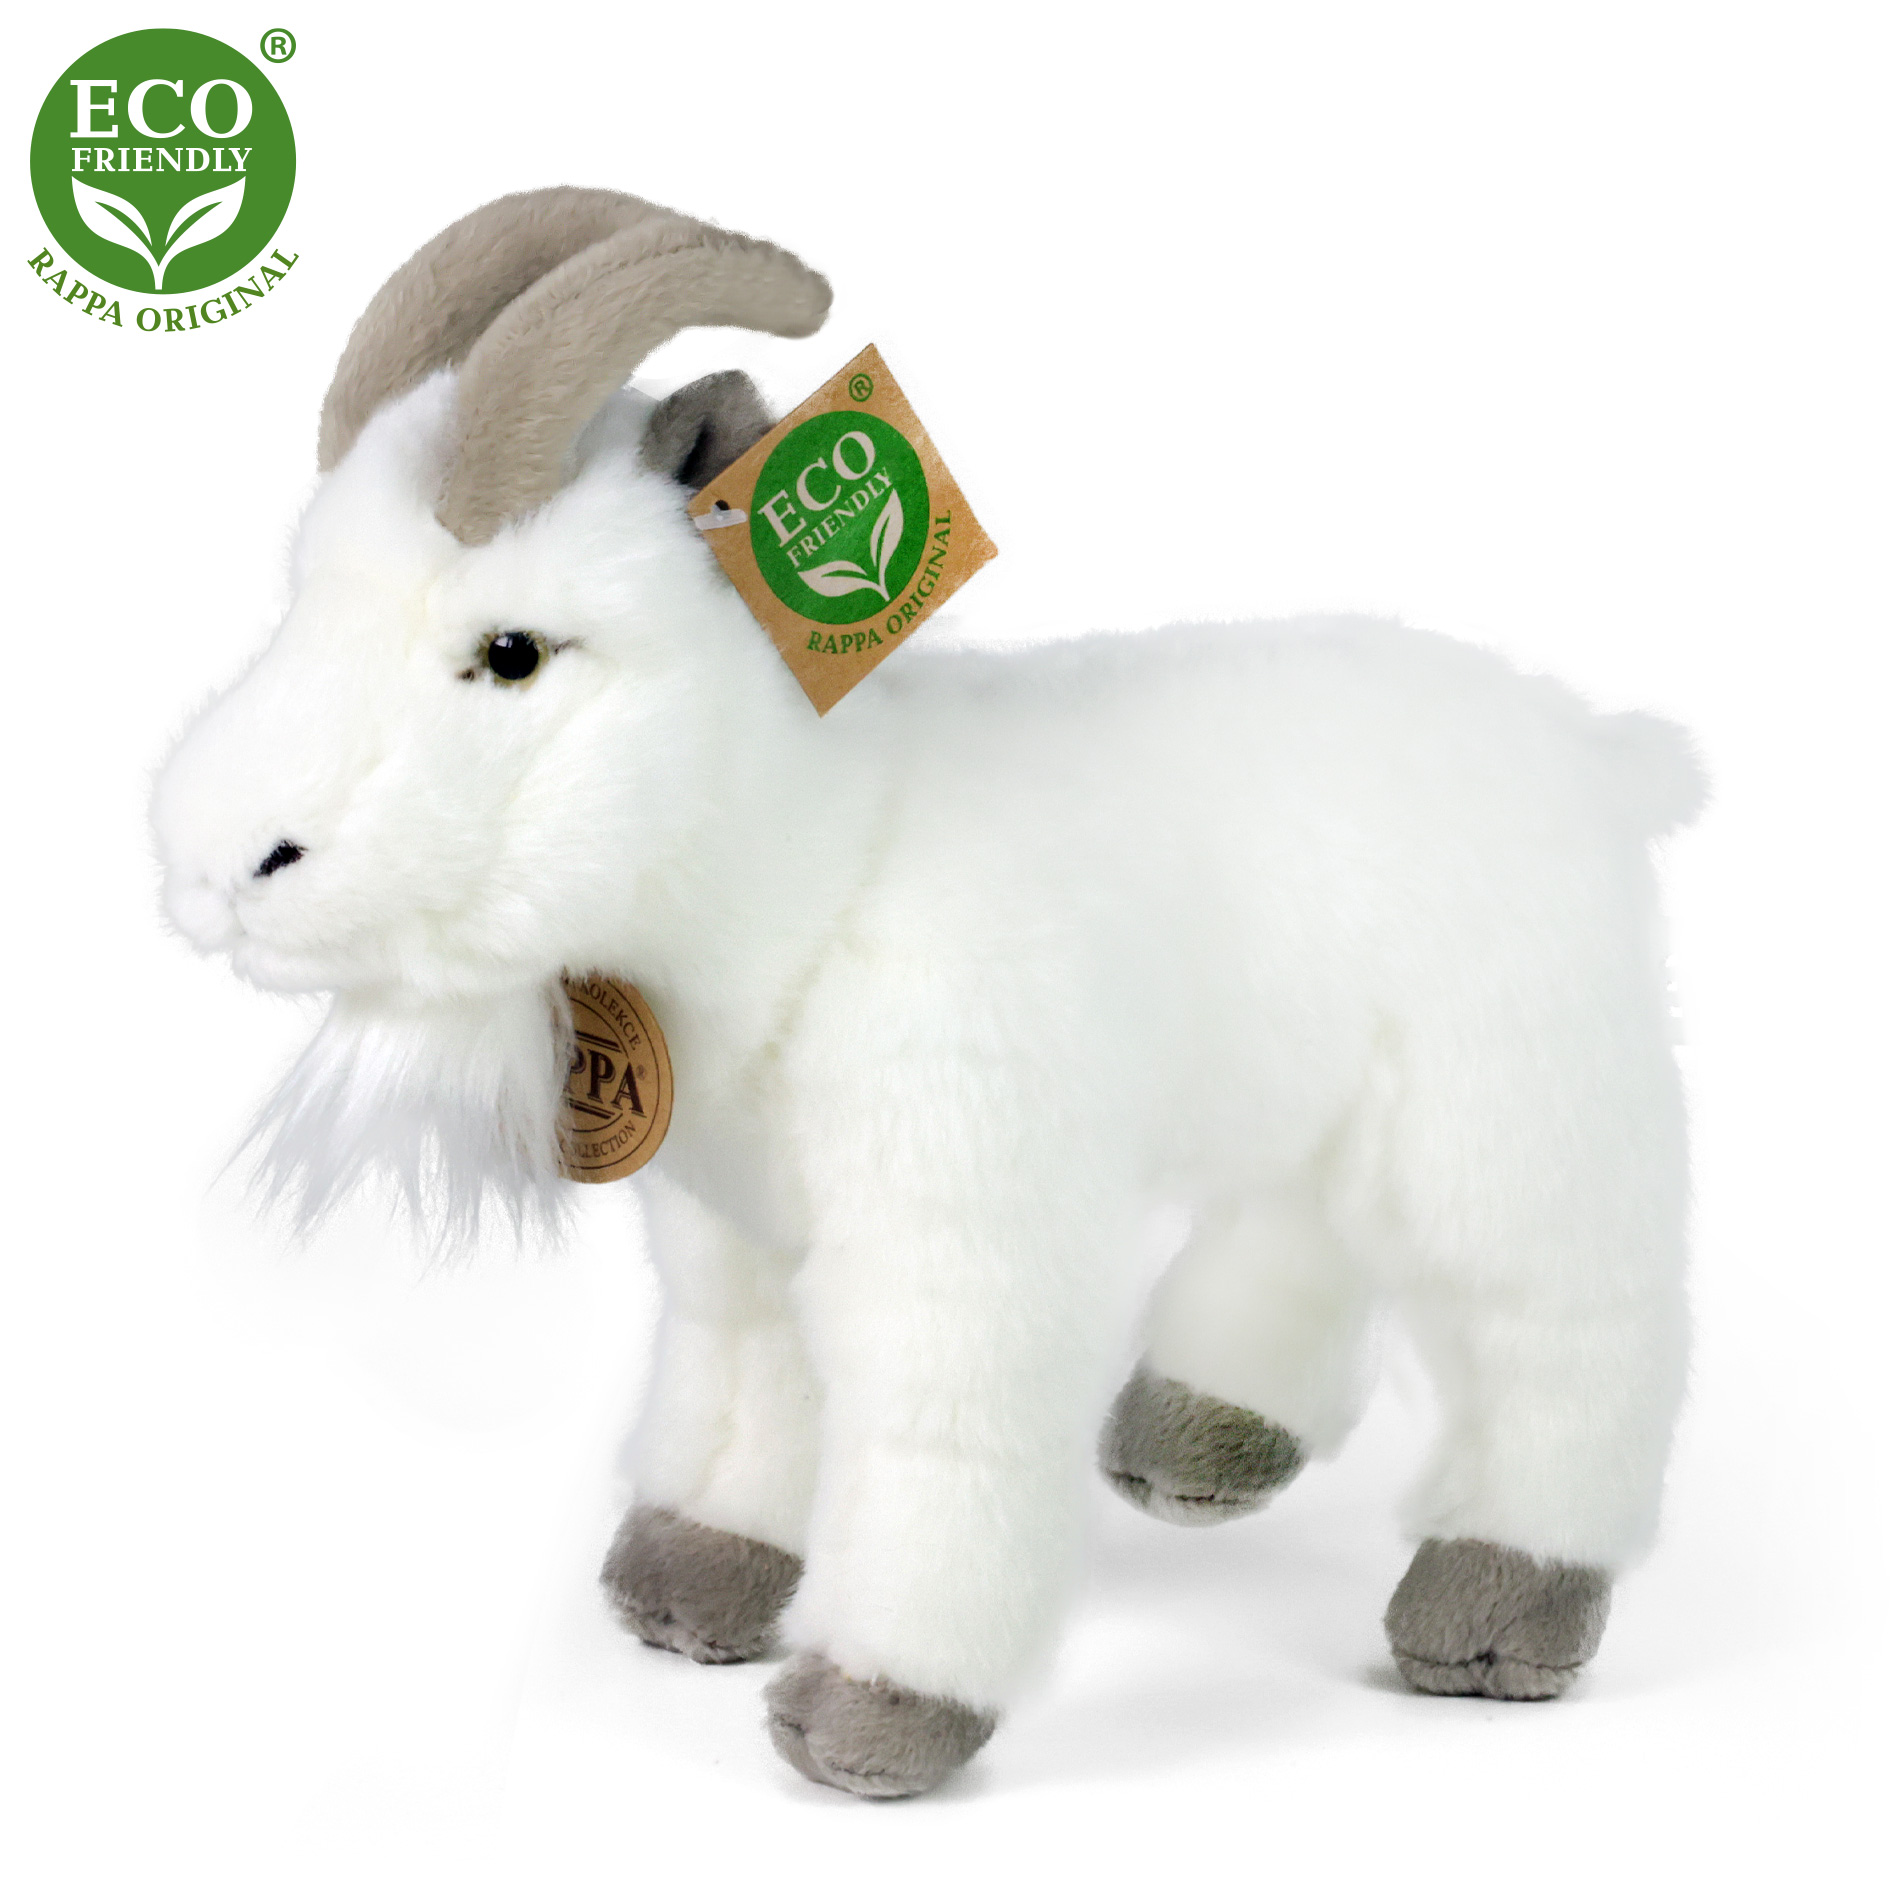 Rappa Eco-Friendly - Plyšový kozel/koza 20 cm